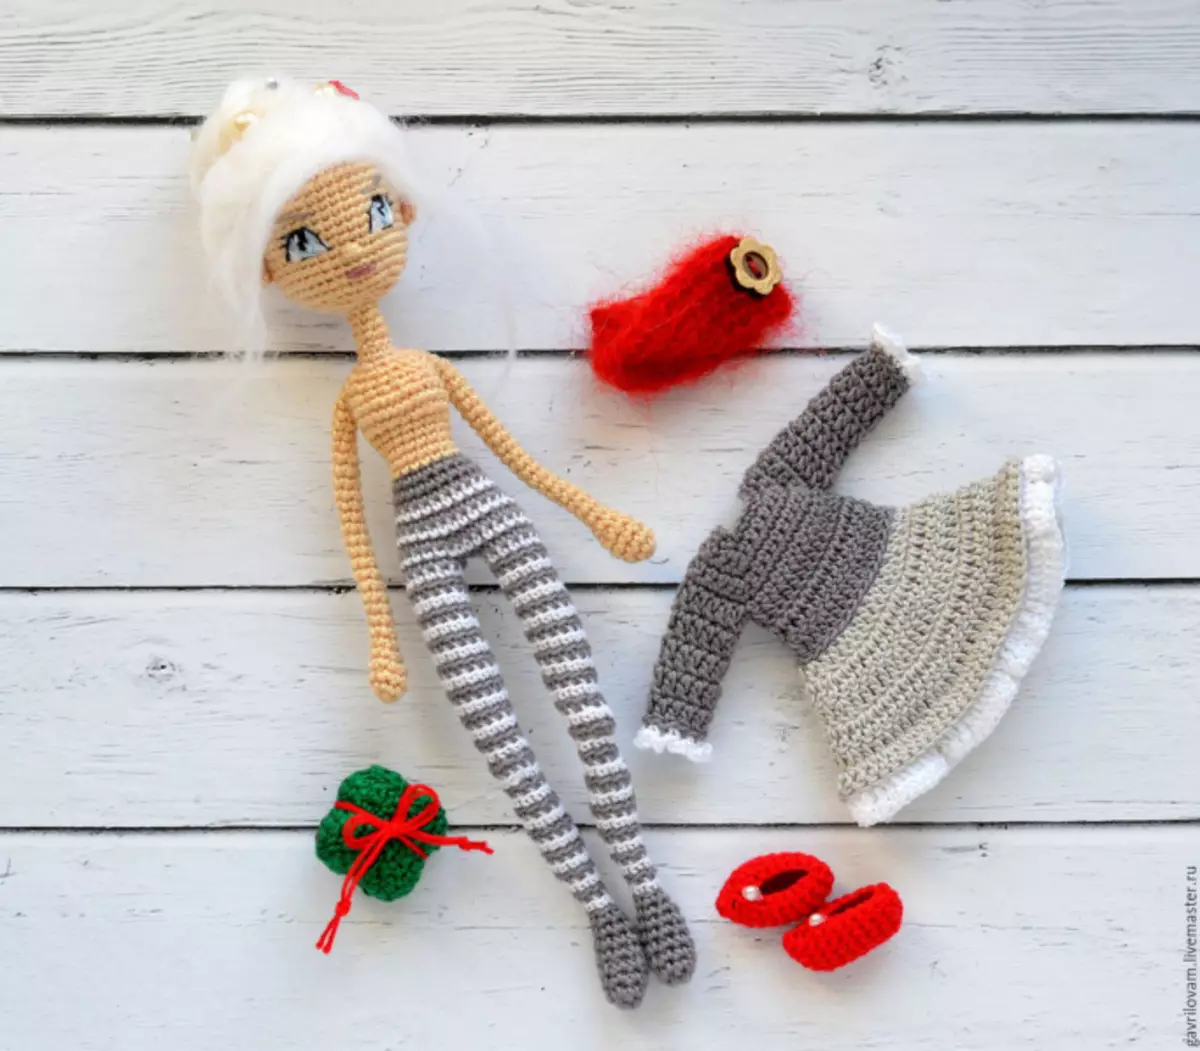 Bambola lavorata a maglia con uncinetto: schemi con descrizioni per principianti